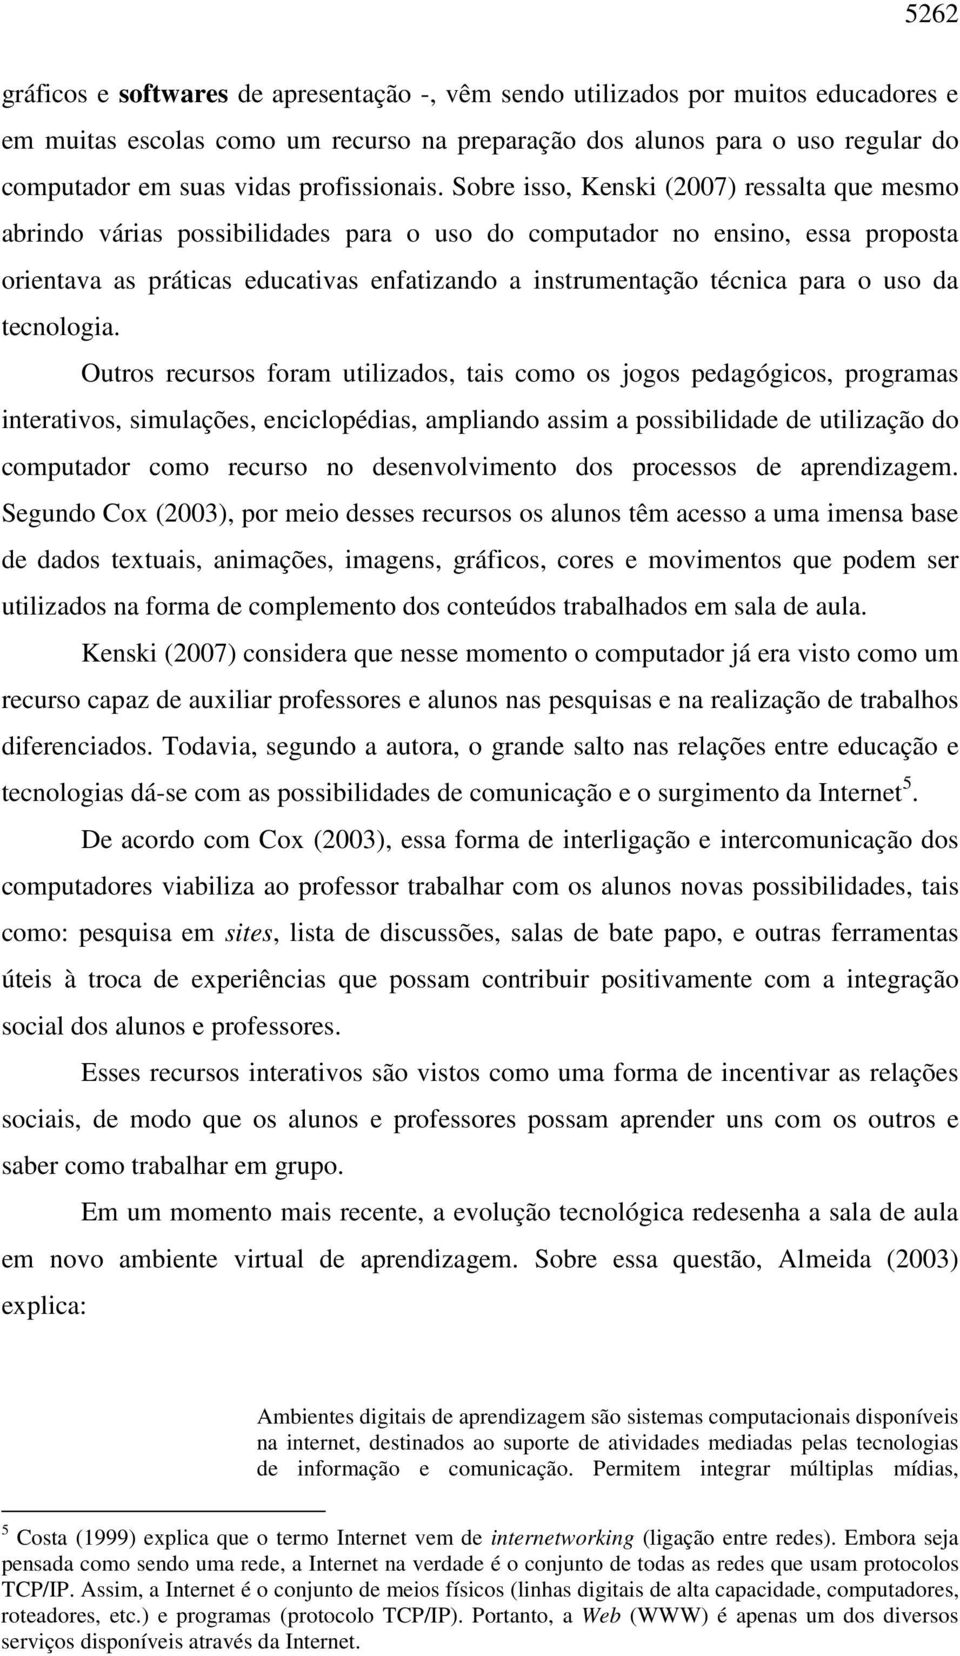 Sobre isso, Kenski (2007) ressalta que mesmo abrindo várias possibilidades para o uso do computador no ensino, essa proposta orientava as práticas educativas enfatizando a instrumentação técnica para